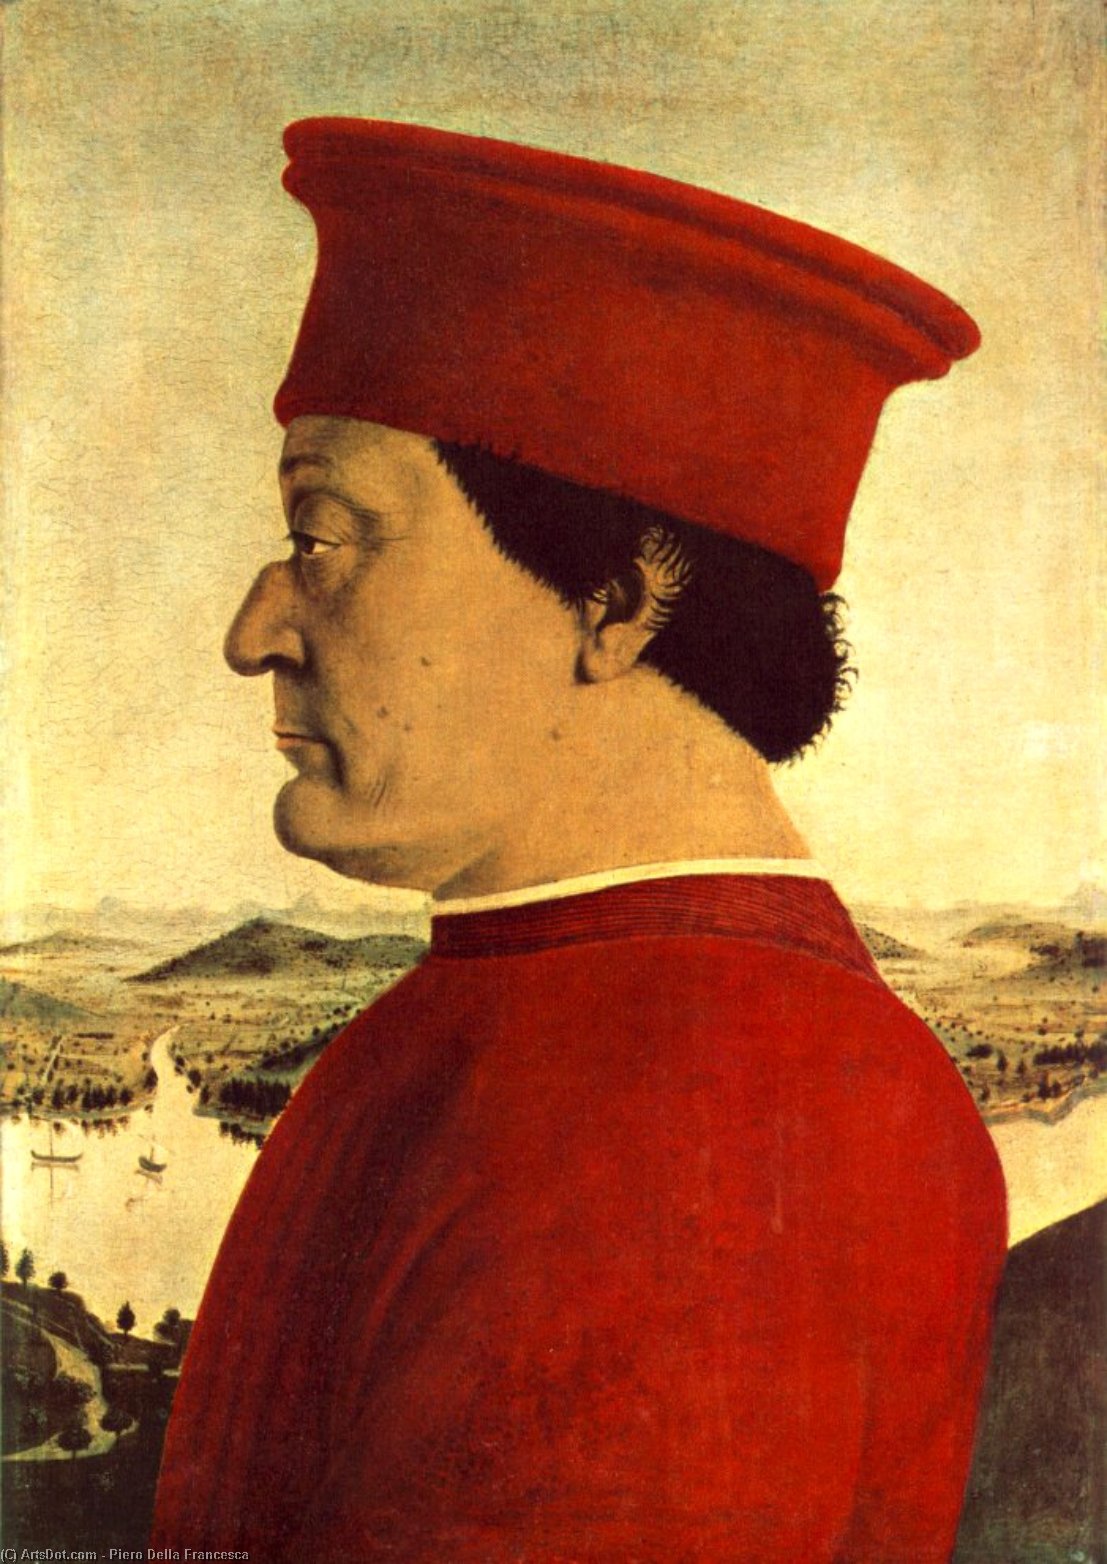 WikiOO.org - אנציקלופדיה לאמנויות יפות - ציור, יצירות אמנות Piero Della Francesca - Federigo da Montefeltro